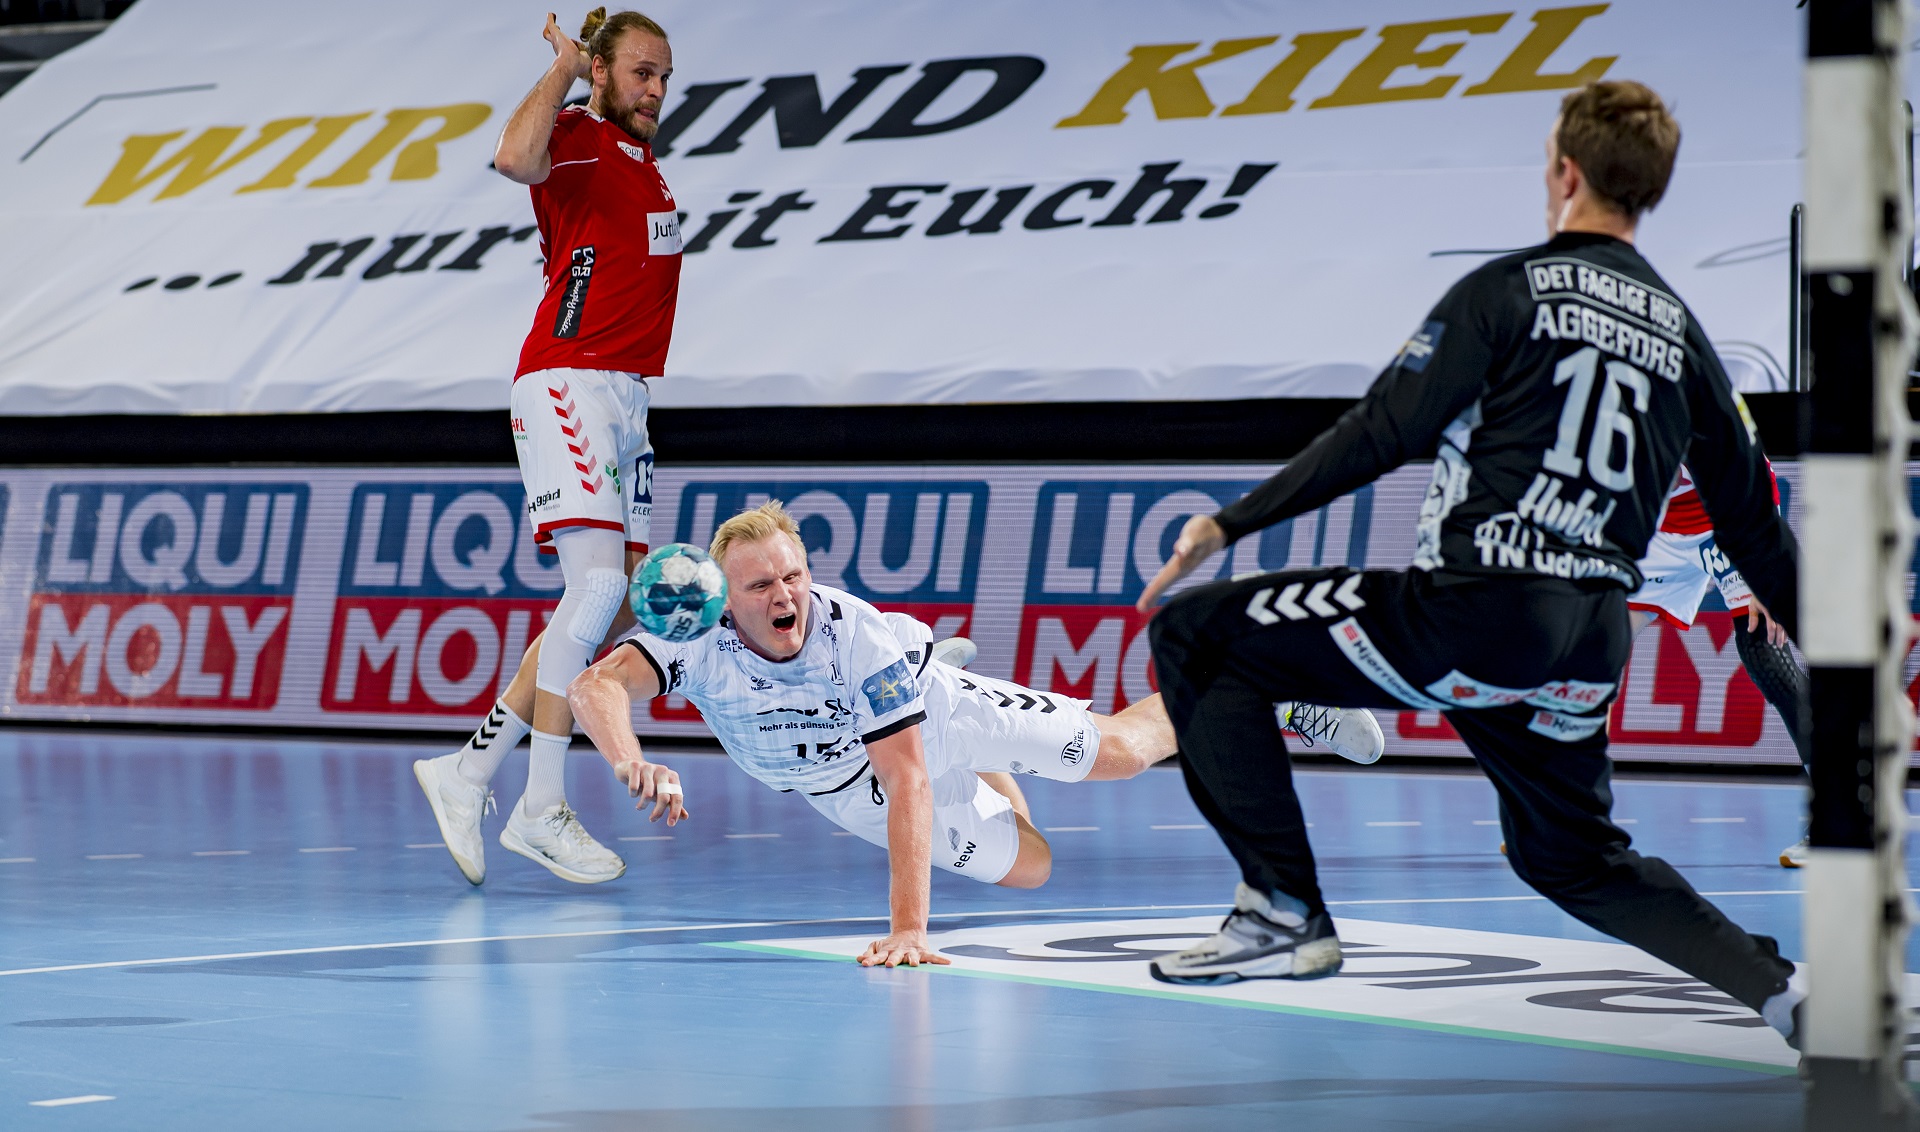 thw-handball.de